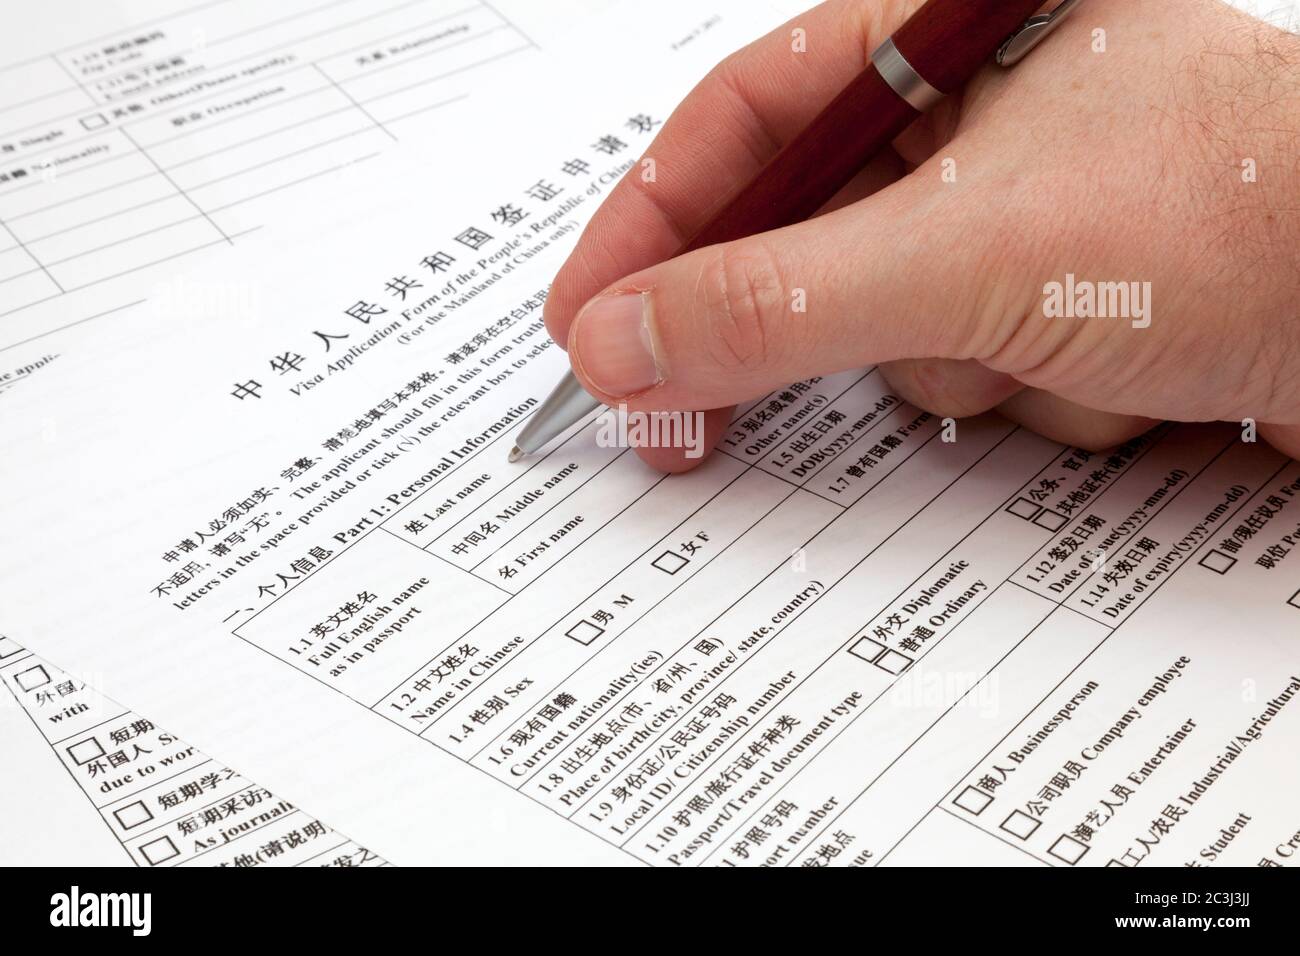 Un homme tenant un stylo à bille pour remplir un formulaire de demande de visa pour la Chine. Banque D'Images